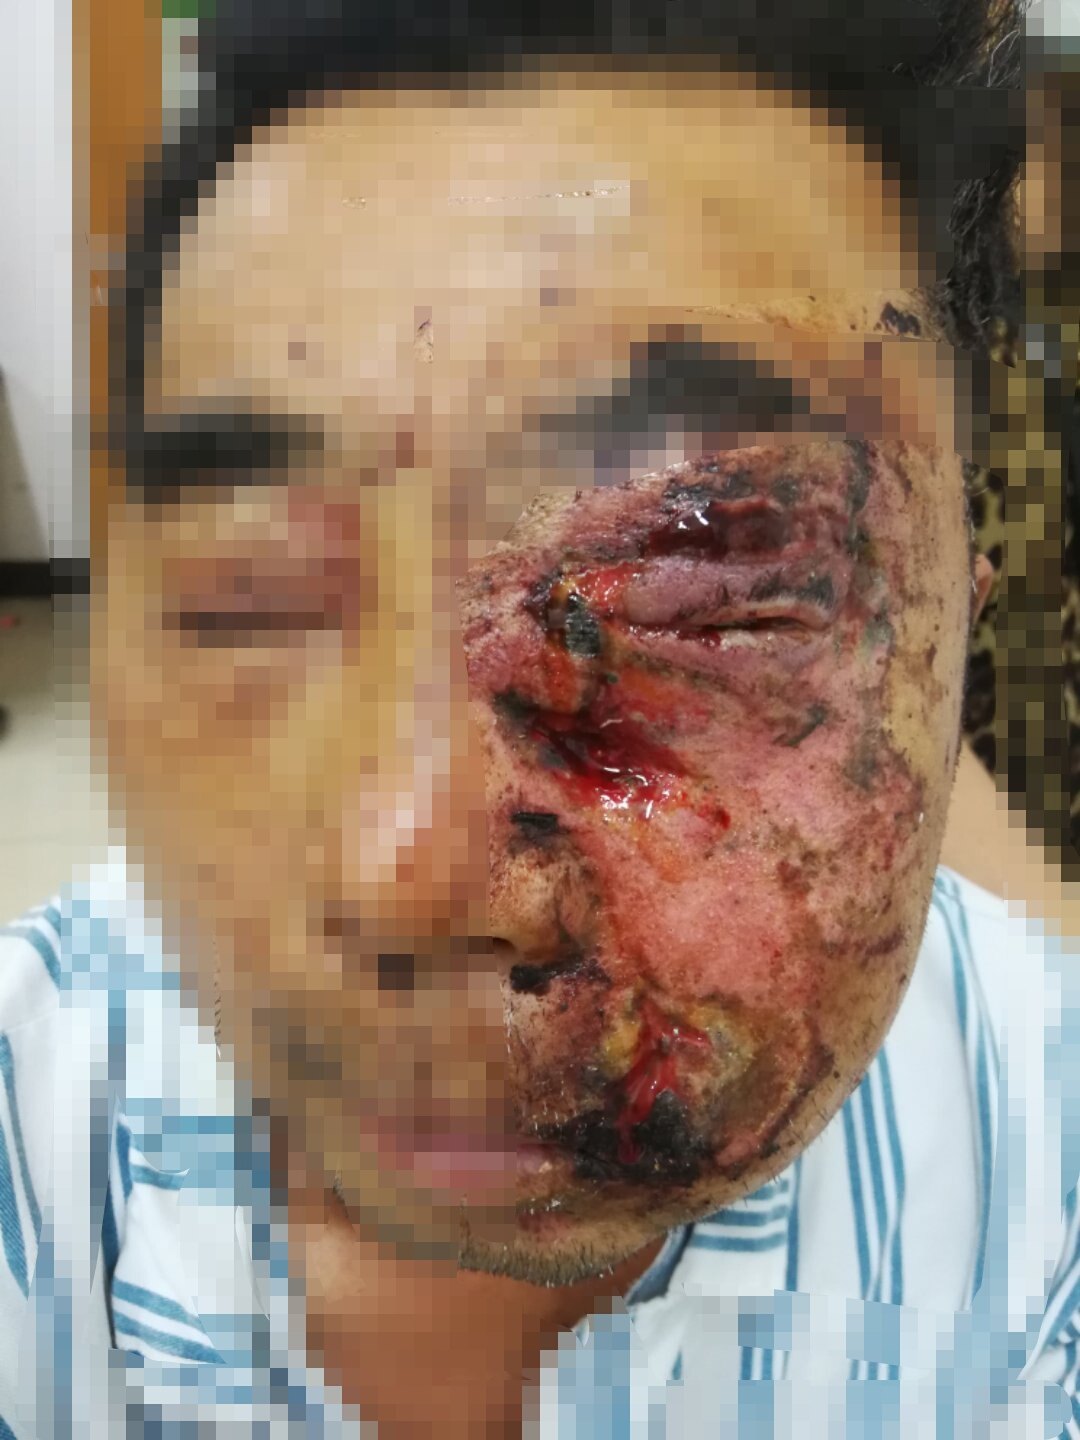 案例6. 鞭炮伤致眼球破裂,颜面皮肤裂伤,颌面部骨折